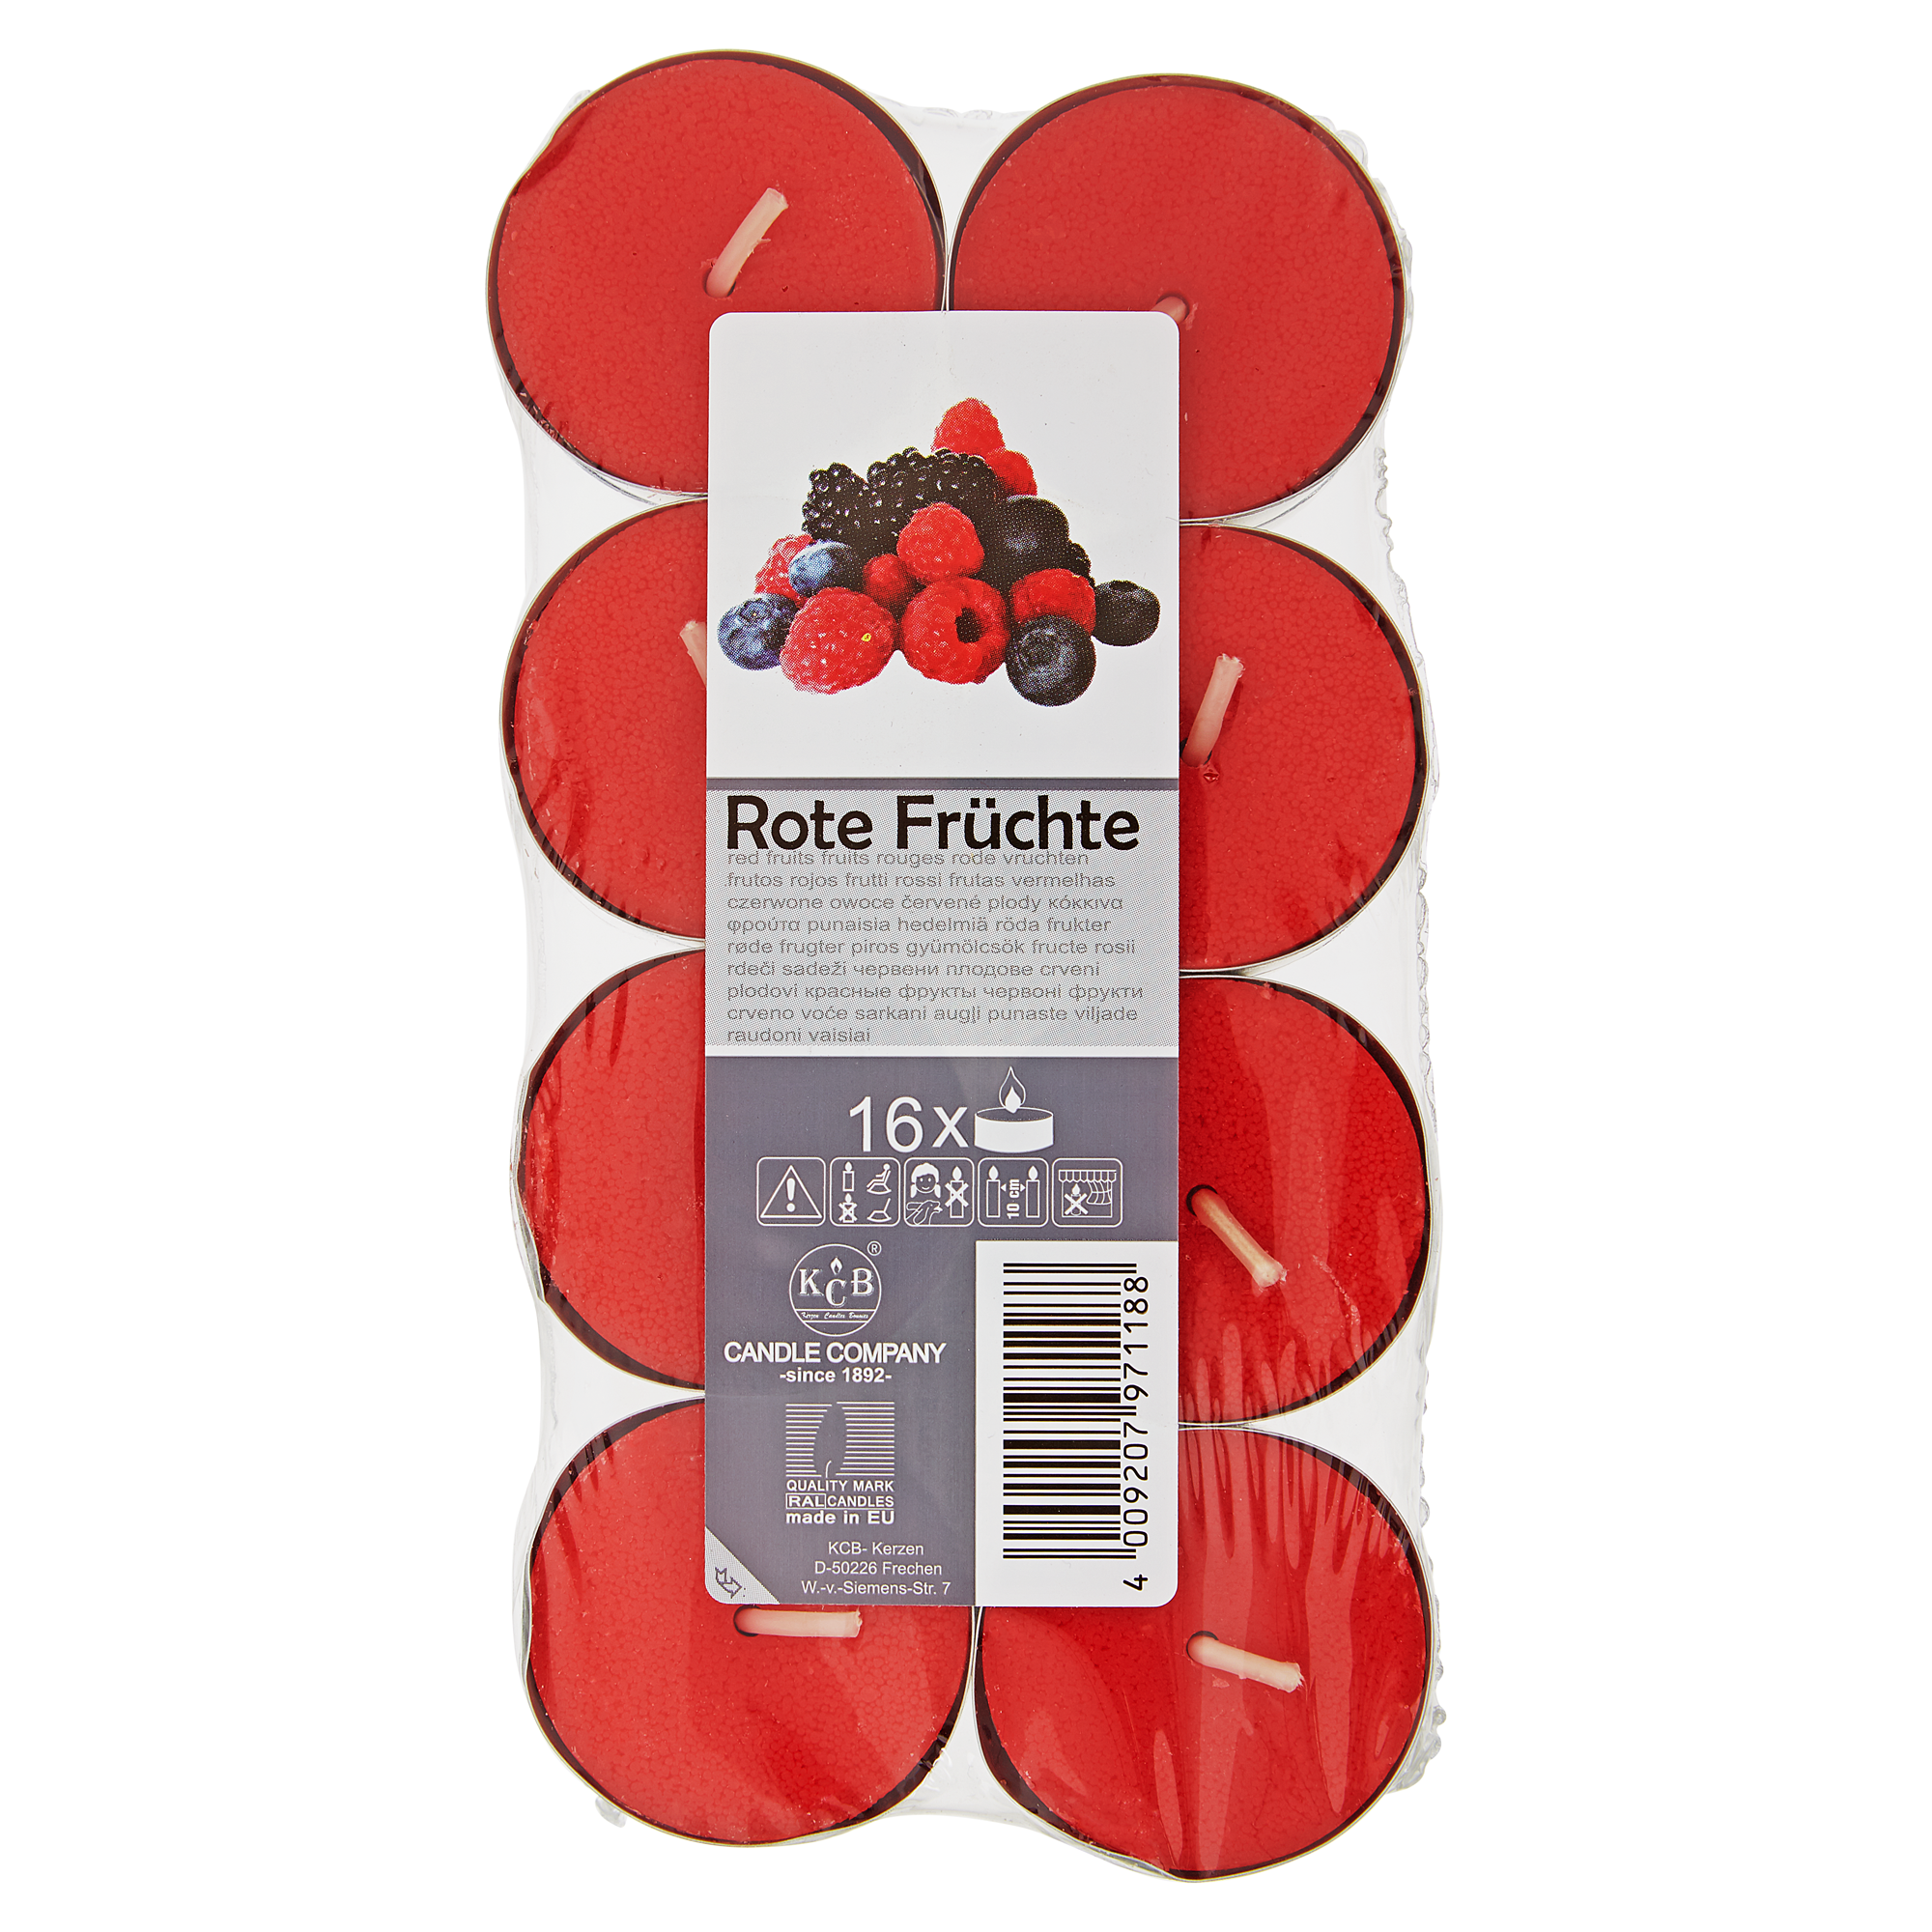 Duftteelicht Rote Früchte 16 Stück + product picture